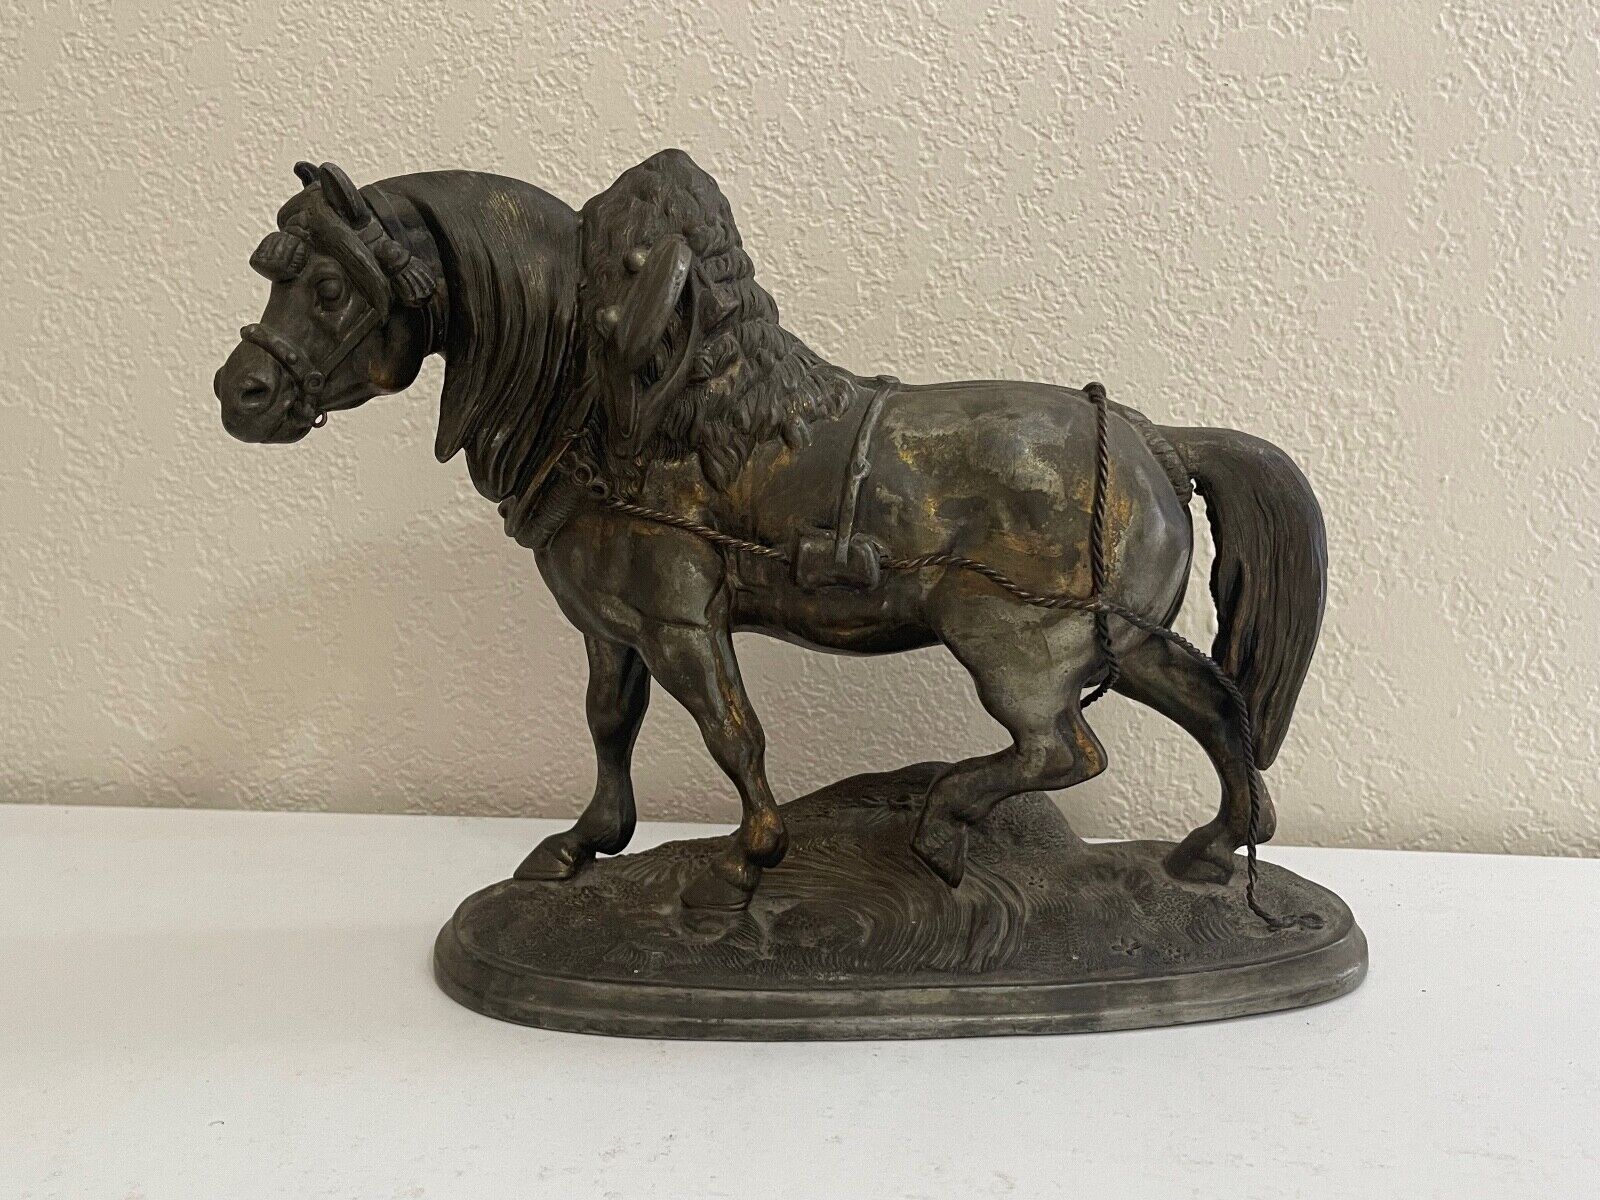 Vintage Antique Spelter Metal Sculpture Statue of Horse Trotting